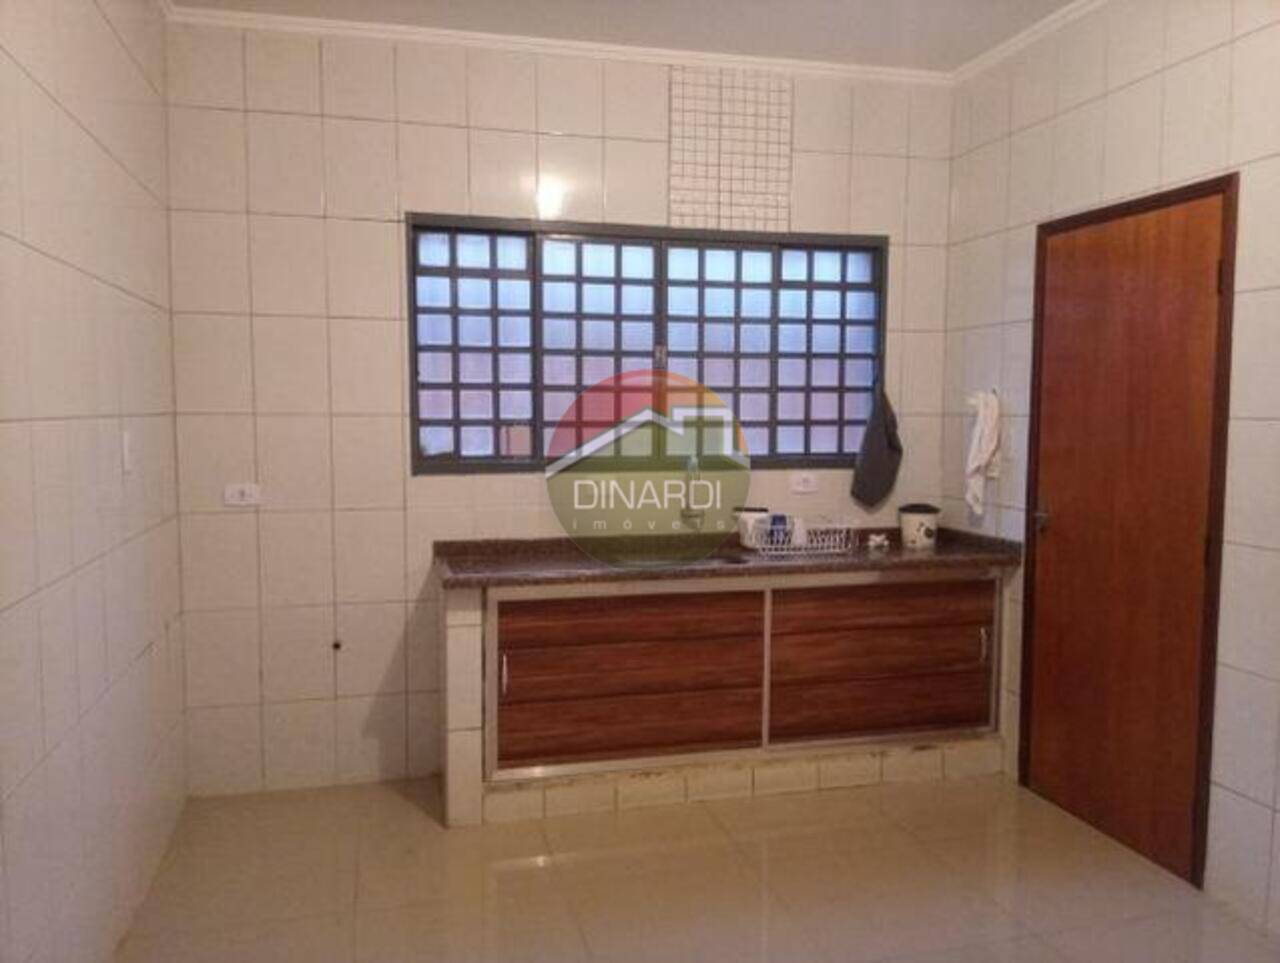 Casa para alugar na ribeirânia em ribeirão preto, cozinha com armários.

dinardi-imóveis-imobiliaria-ribeirao-preto- dinardi50anos-quarto-um-imóvel.

